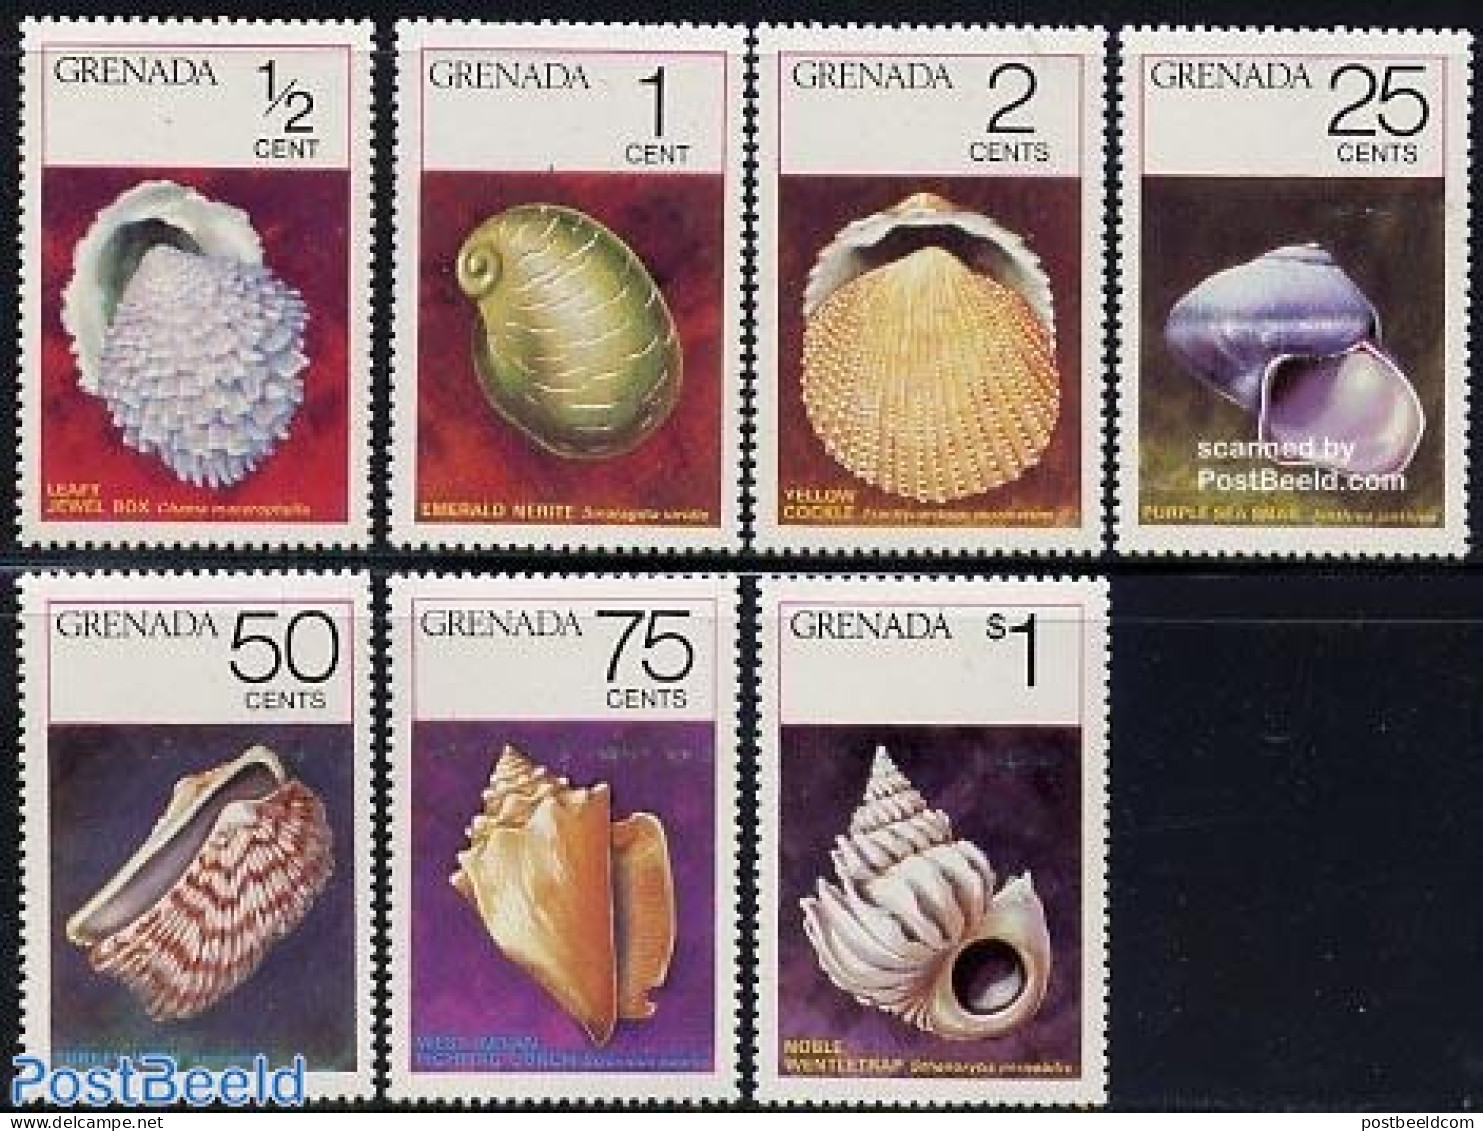 Grenada 1975 Shells 7v, Mint NH, Nature - Shells & Crustaceans - Mundo Aquatico